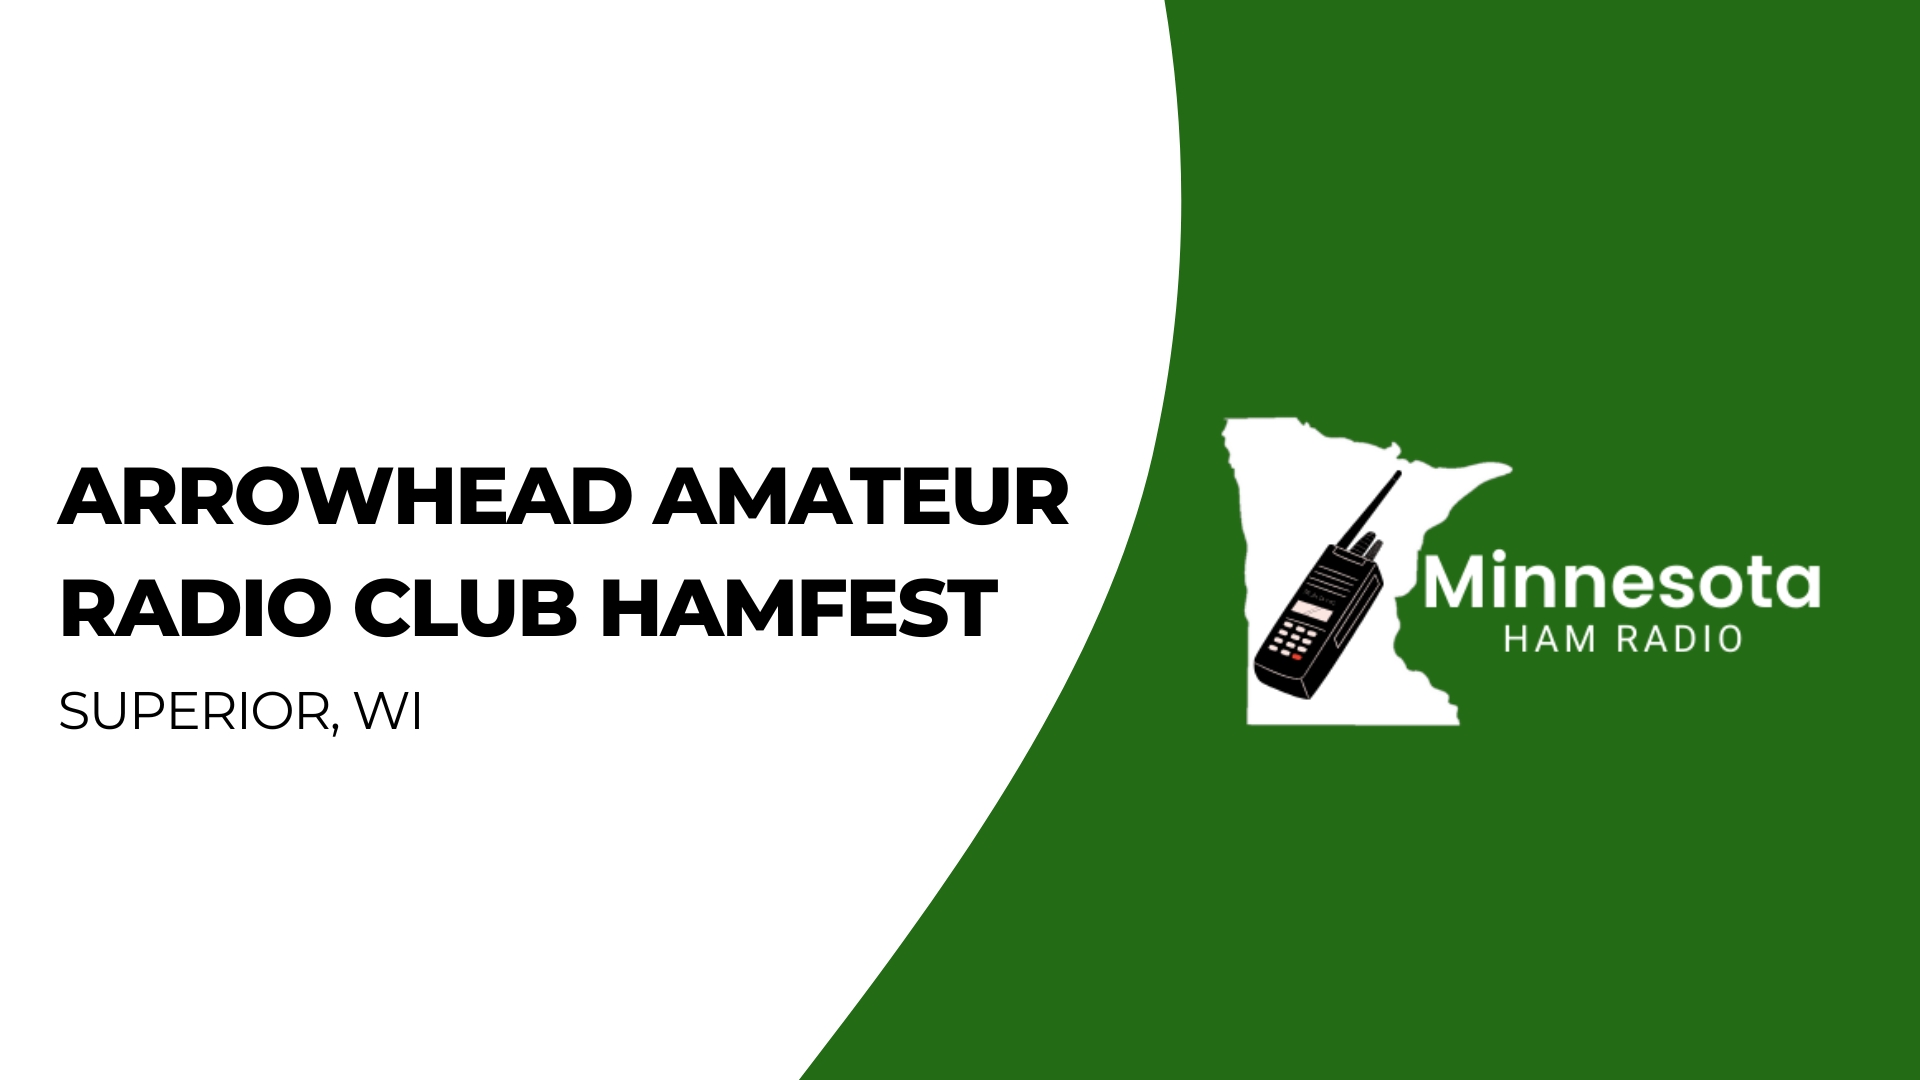 Arrowhead Amateur Radio Club Hamfest